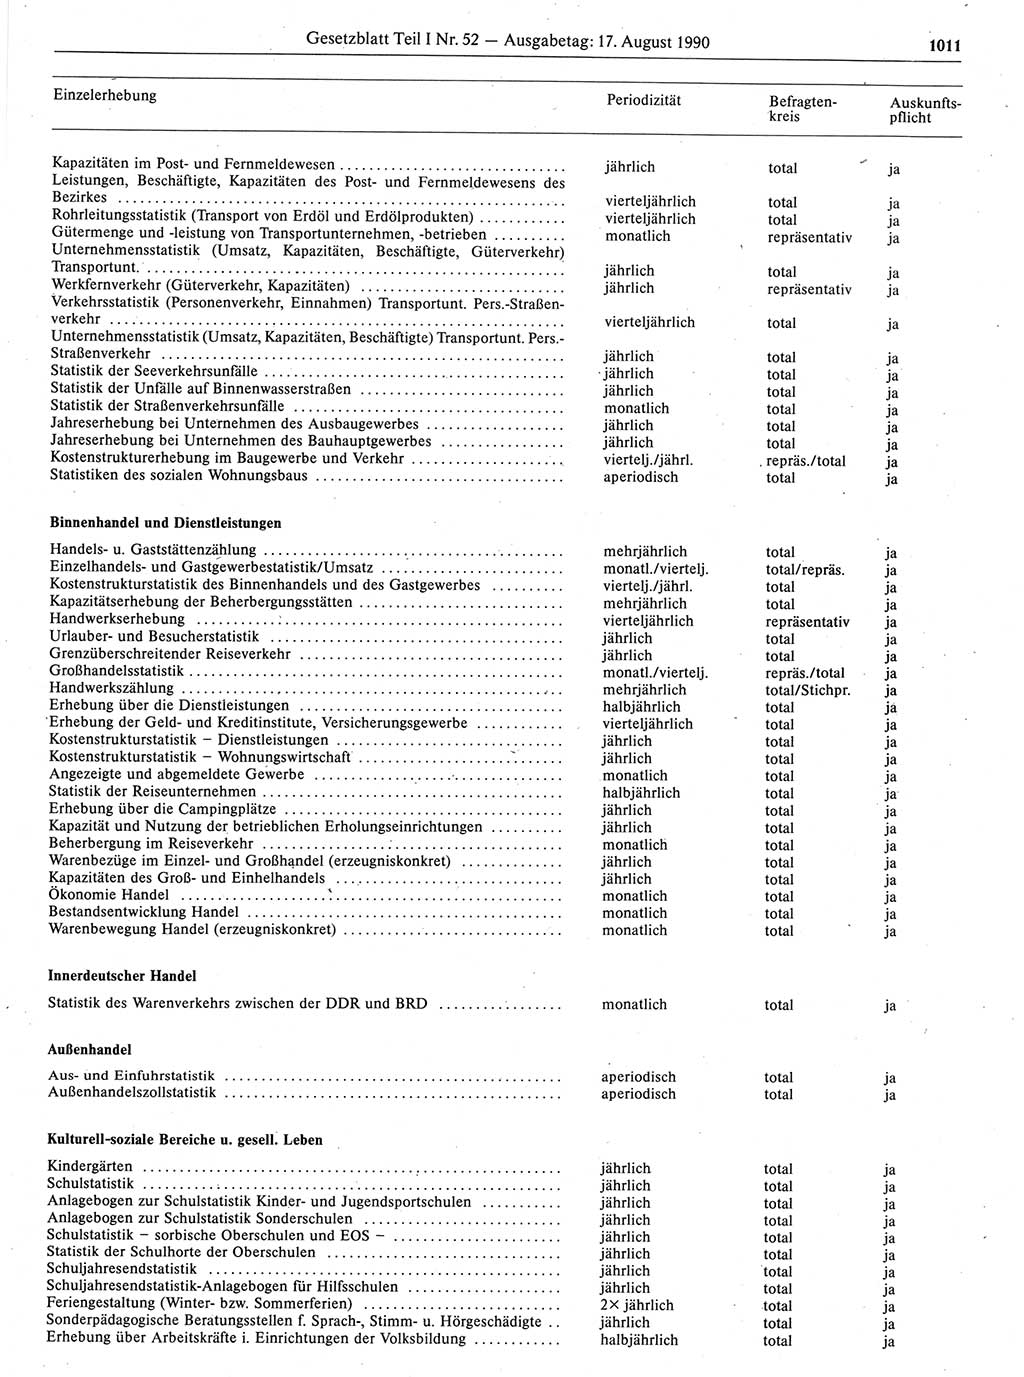 Gesetzblatt (GBl.) der Deutschen Demokratischen Republik (DDR) Teil Ⅰ 1990, Seite 1011 (GBl. DDR Ⅰ 1990, S. 1011)